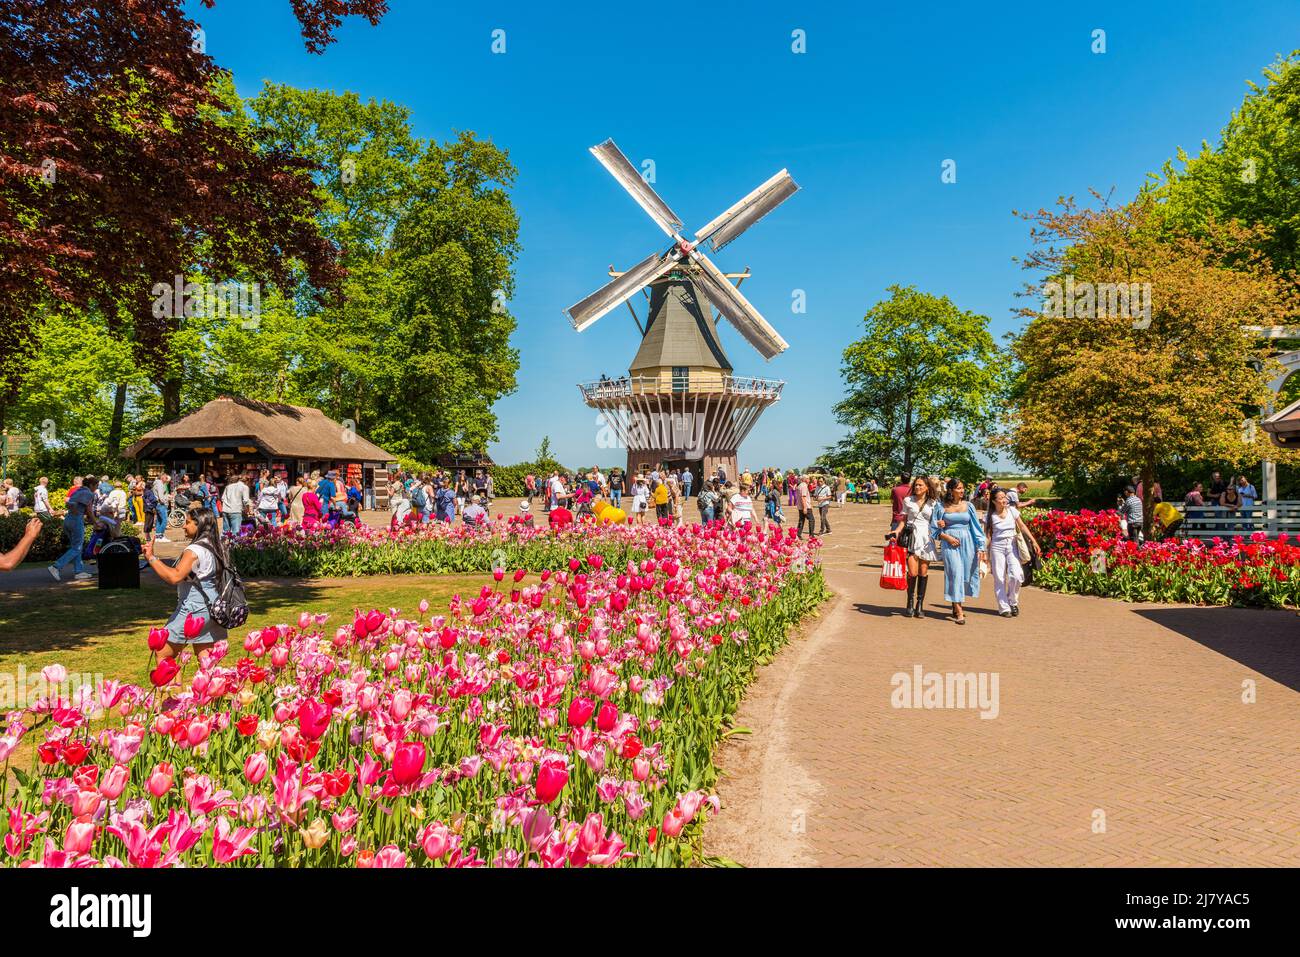 Moulin au complexe Keukenhof Gardens à Lisse, en Hollande-Méridionale, aux pays-Bas. Keukenhof est l'un des plus grands jardins fleuris du monde. Banque D'Images